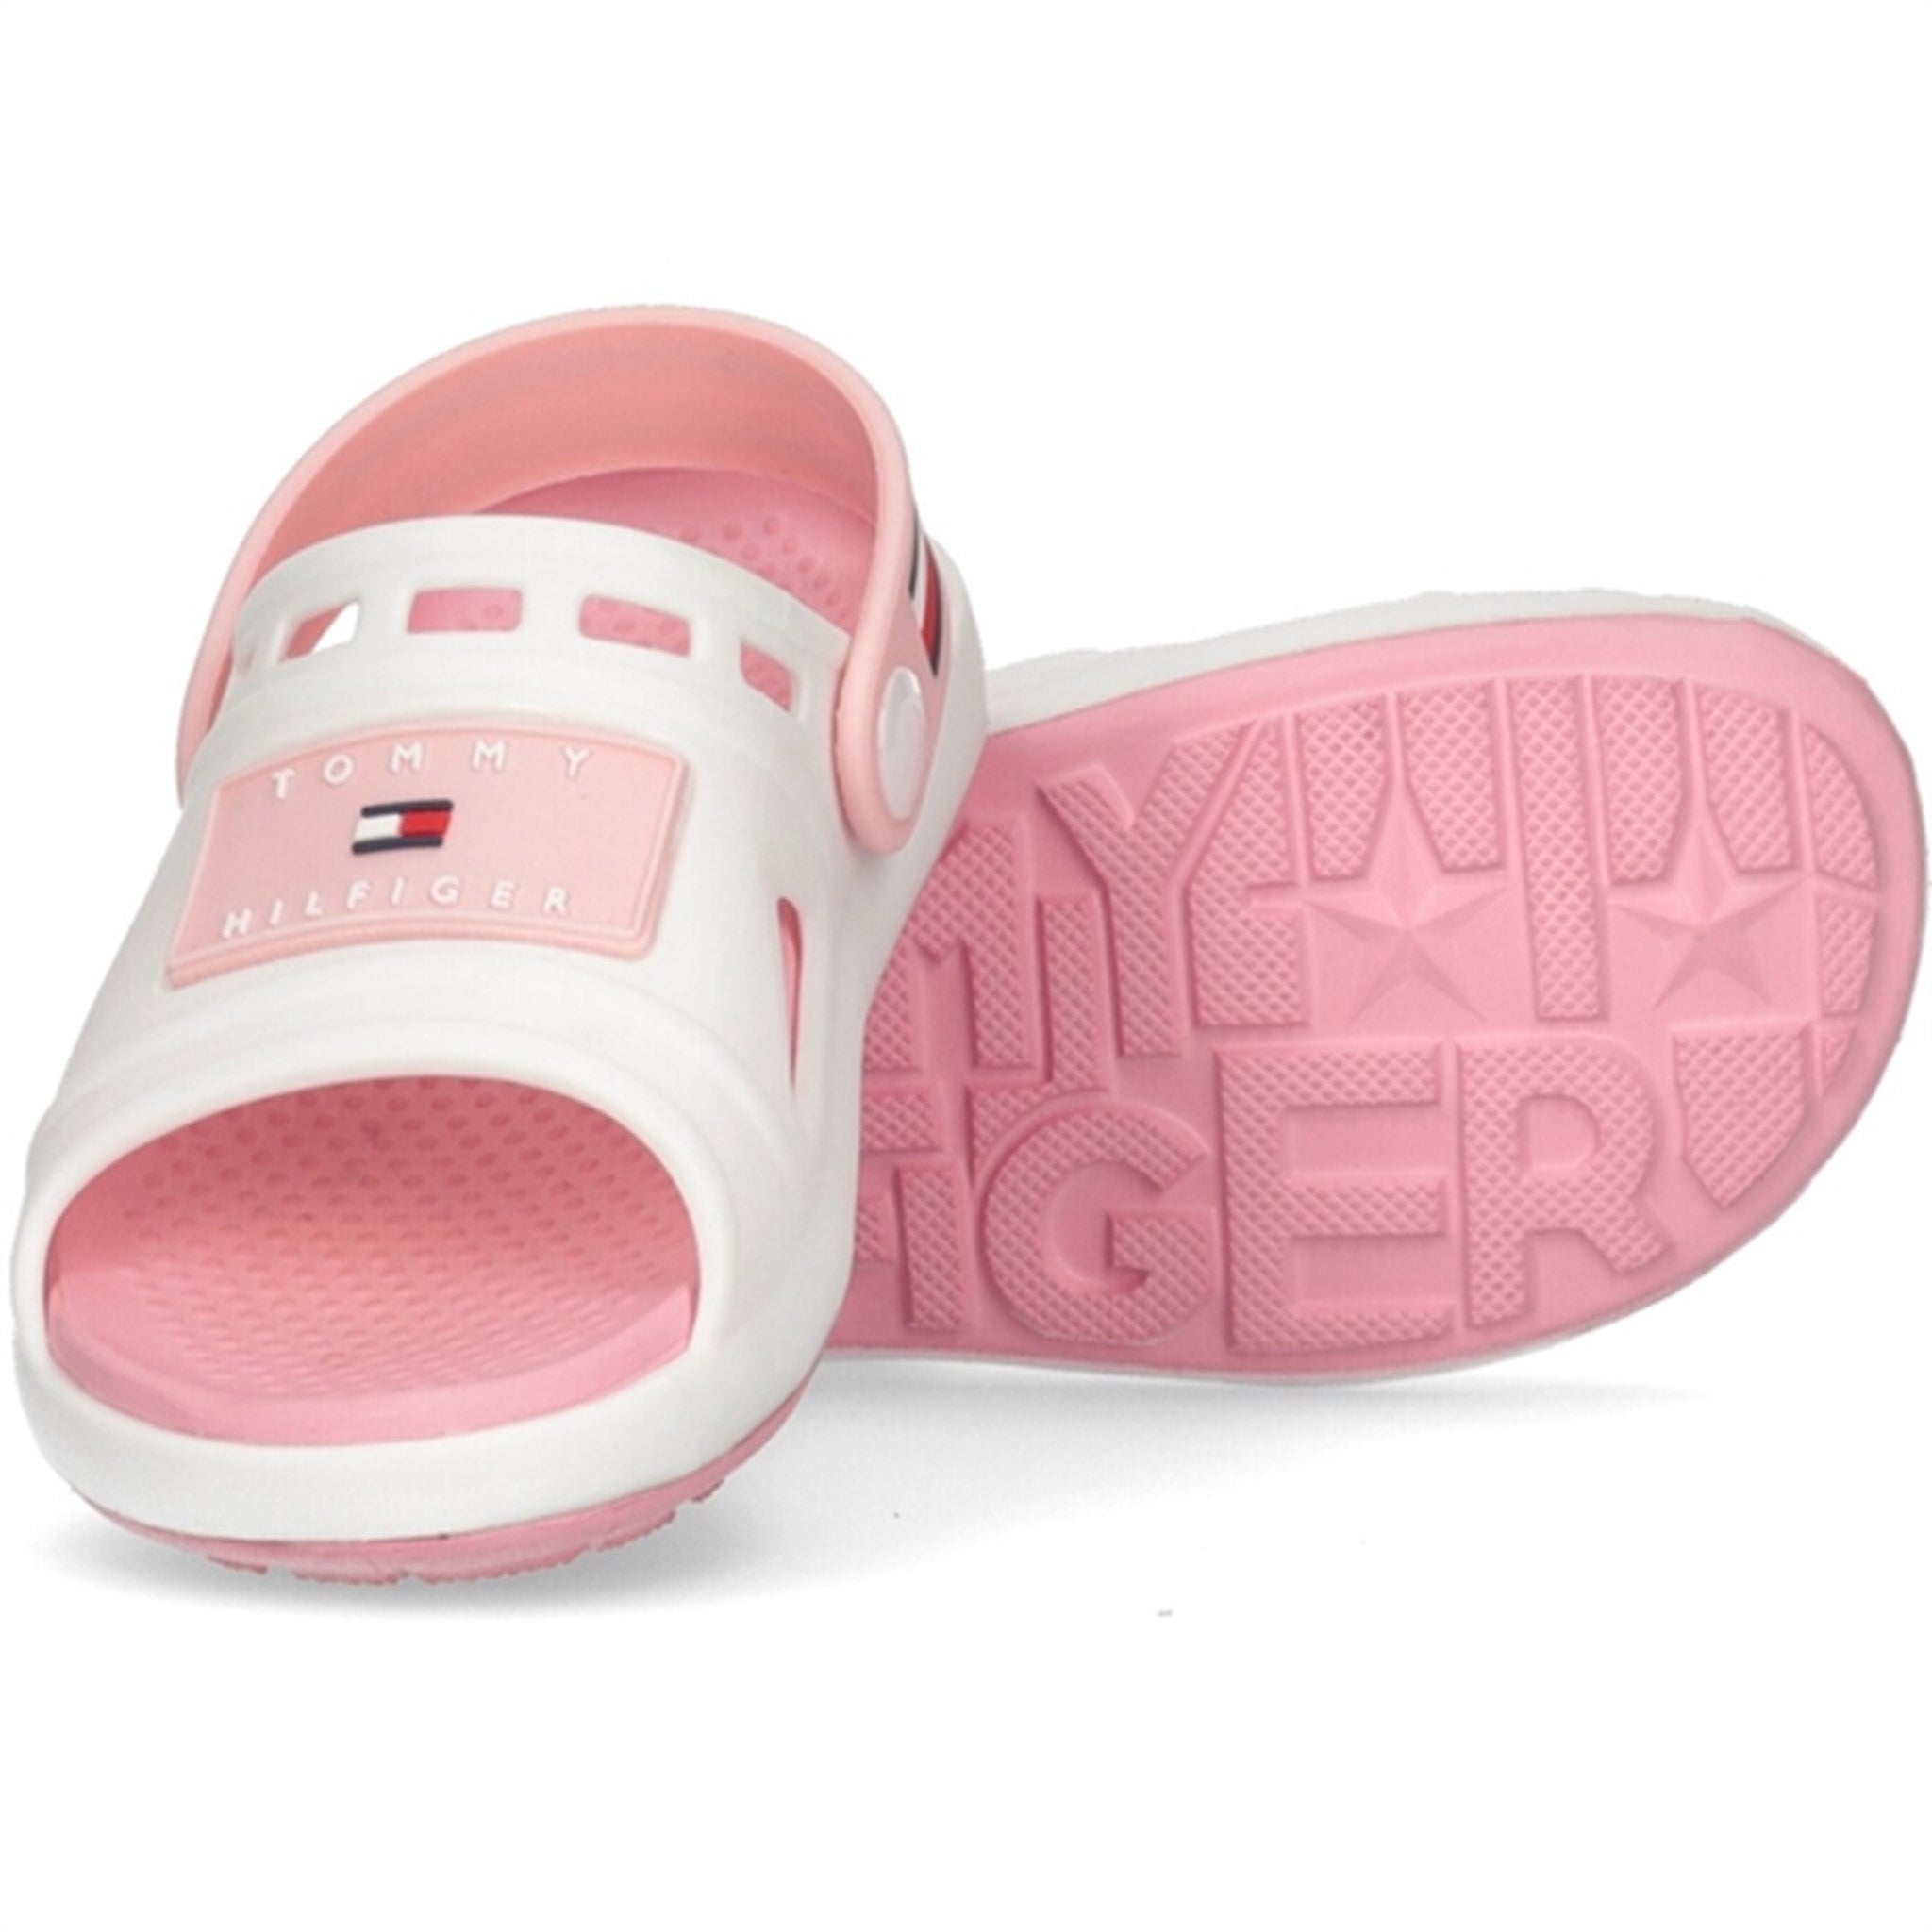 Tommy Hilfiger Comfy Sandal White/Pink